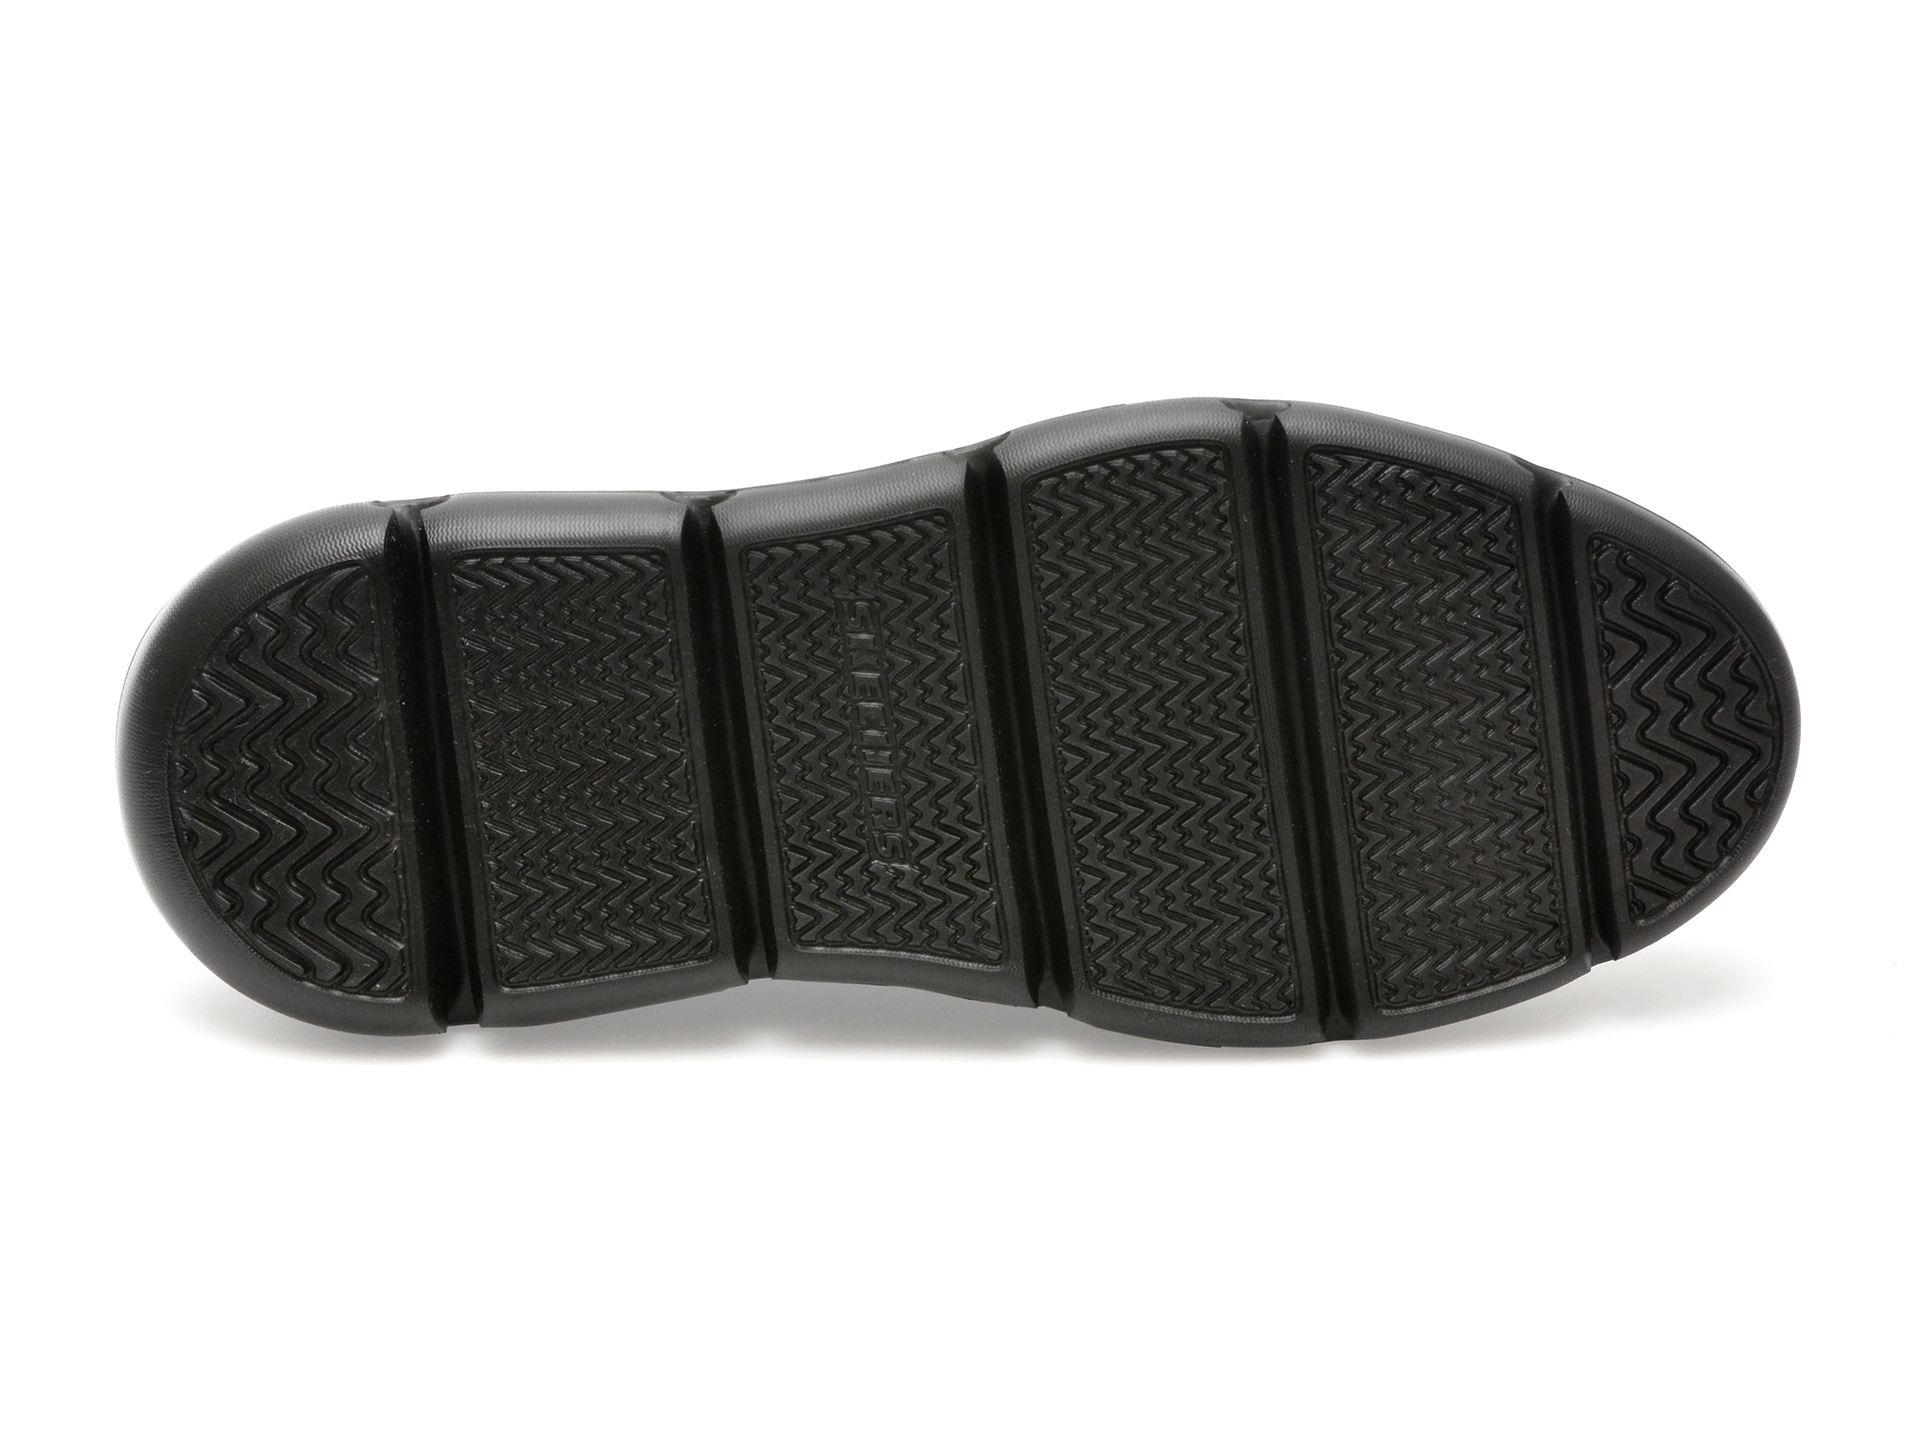 Pantofi SKECHERS negri, GARZA-GERVIN, din piele naturala